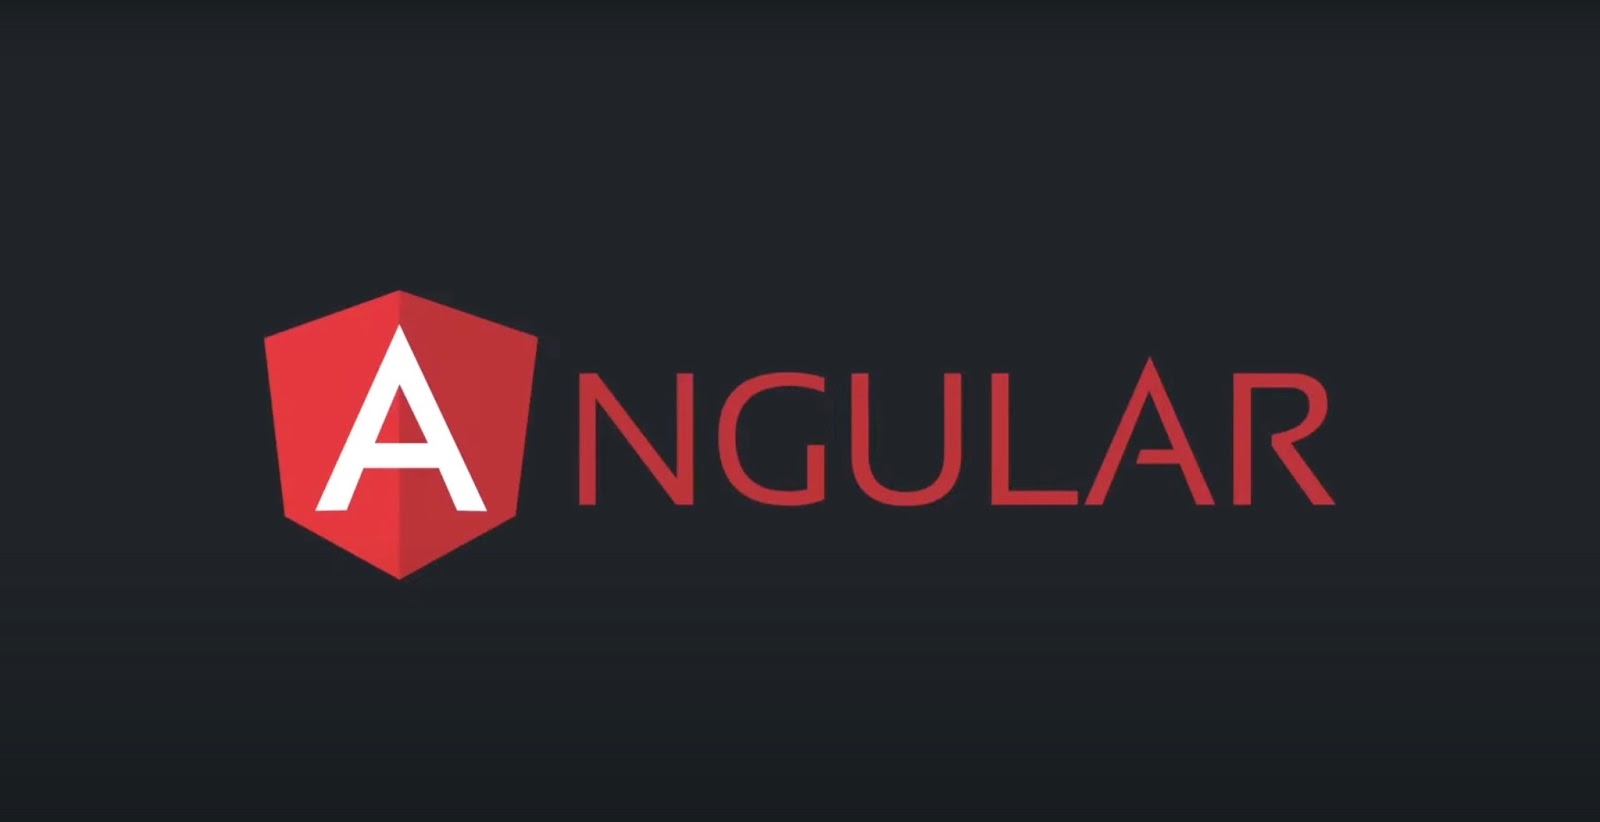 Angular logo on black background